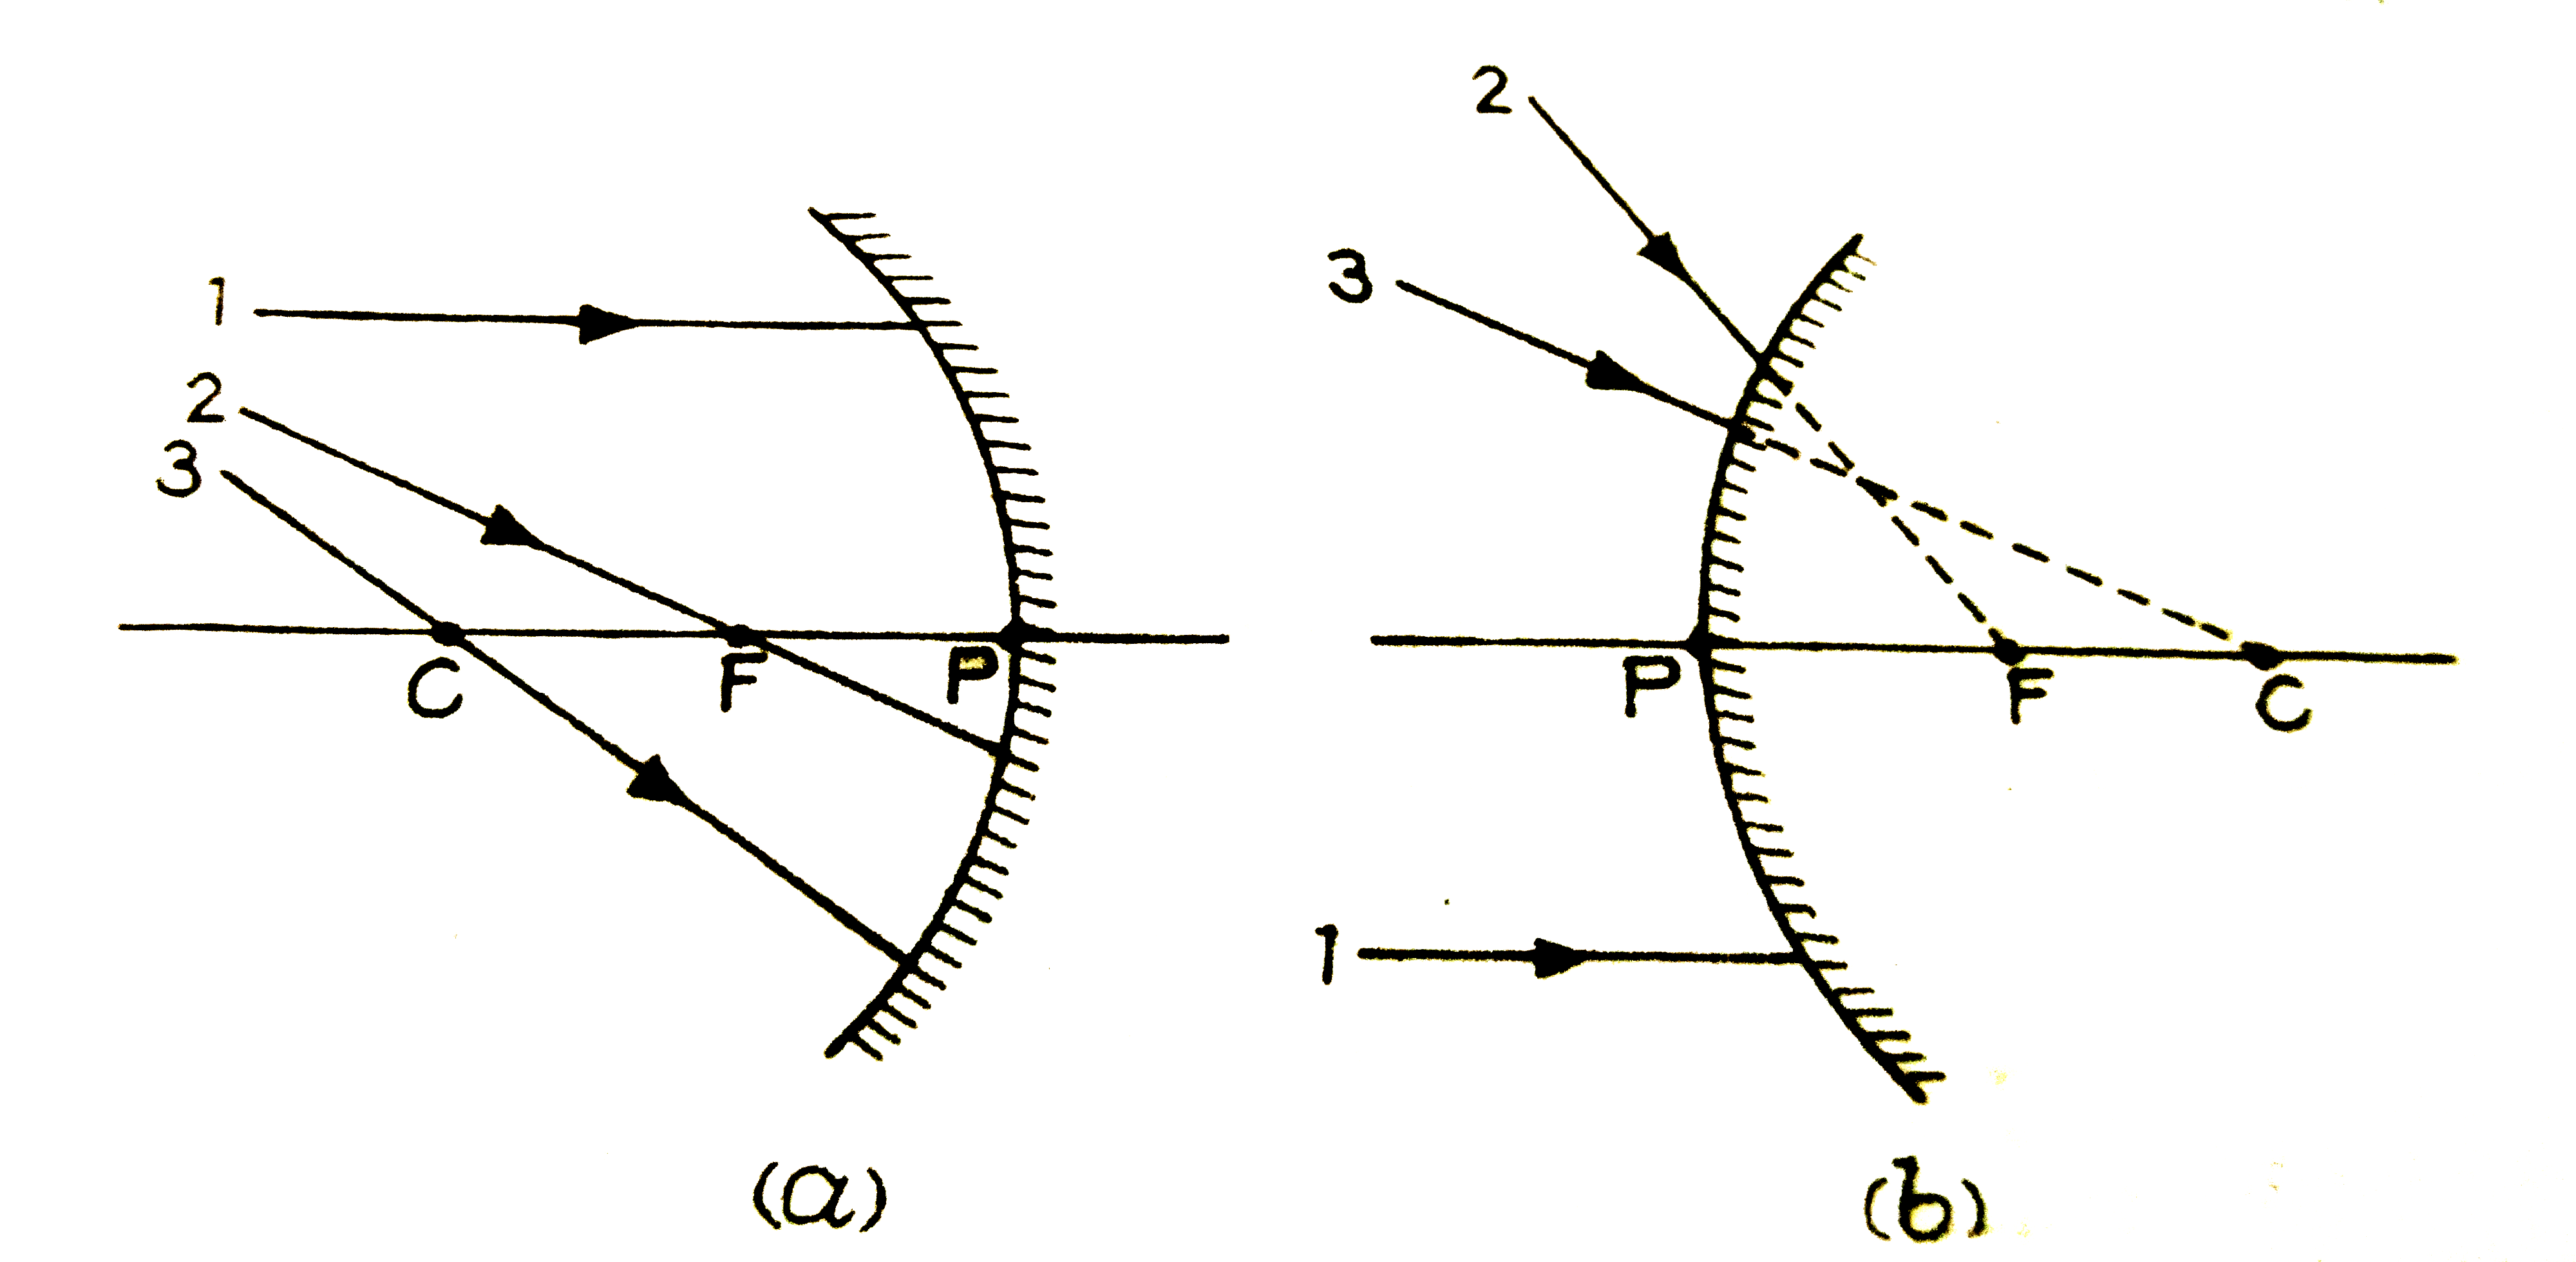 निम्नांकित चित्र में क्रमशः अवतल व उत्तल दर्पणों पर तीन-तीन आपतित किरणें दिखाई गई है। प्रत्येक के लिये परावर्तित किरण खिचिये।